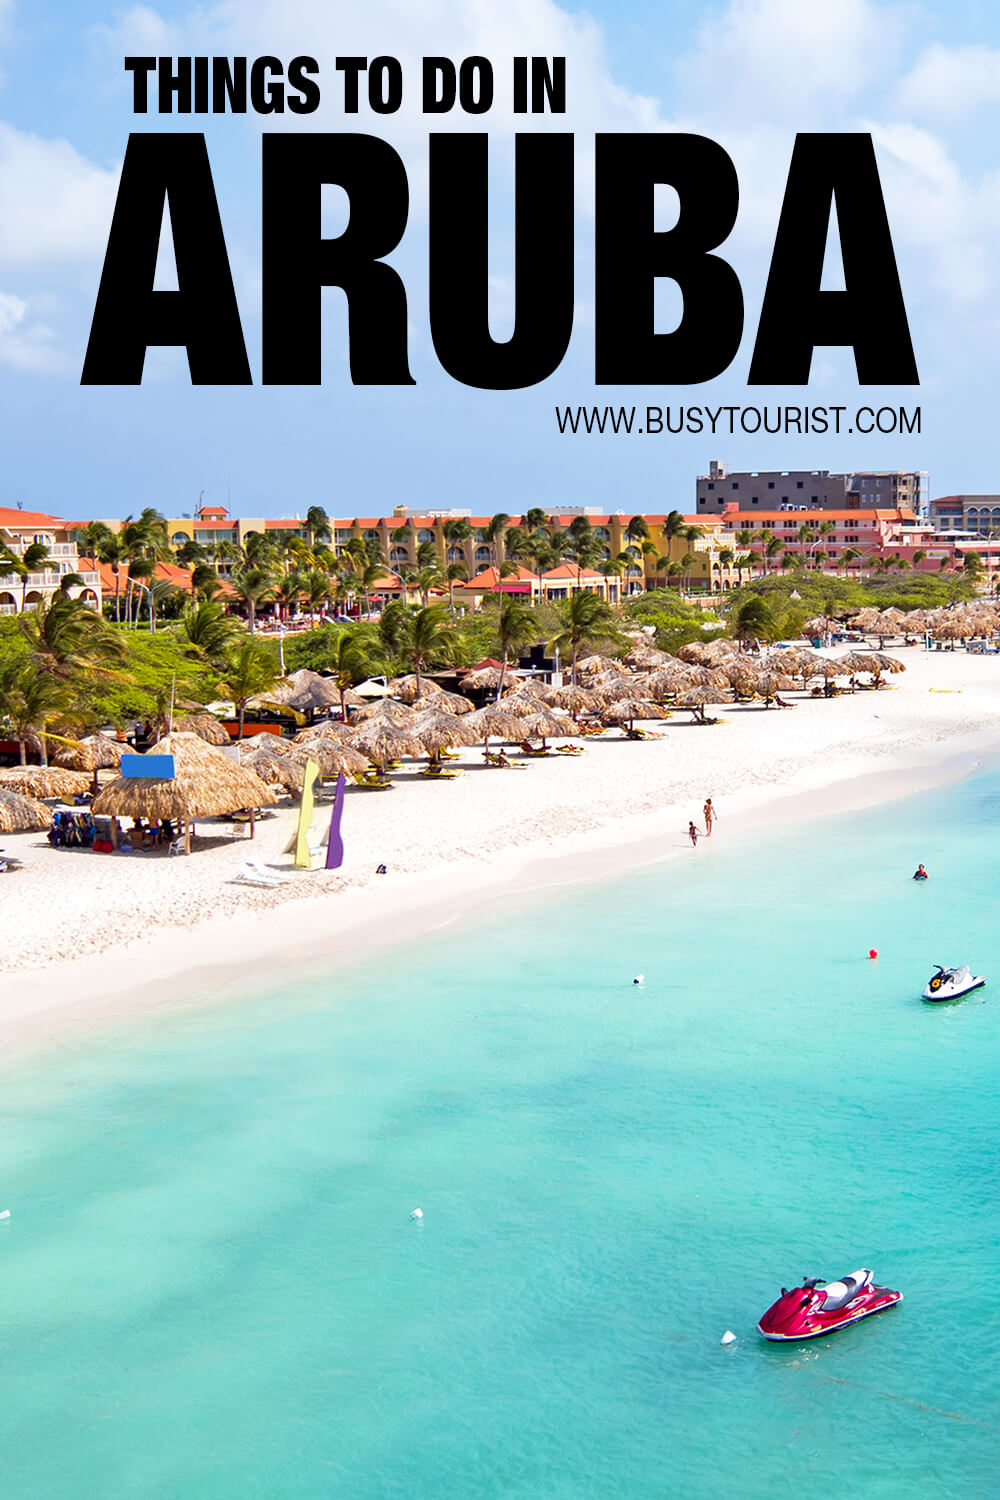 aruba places to visit